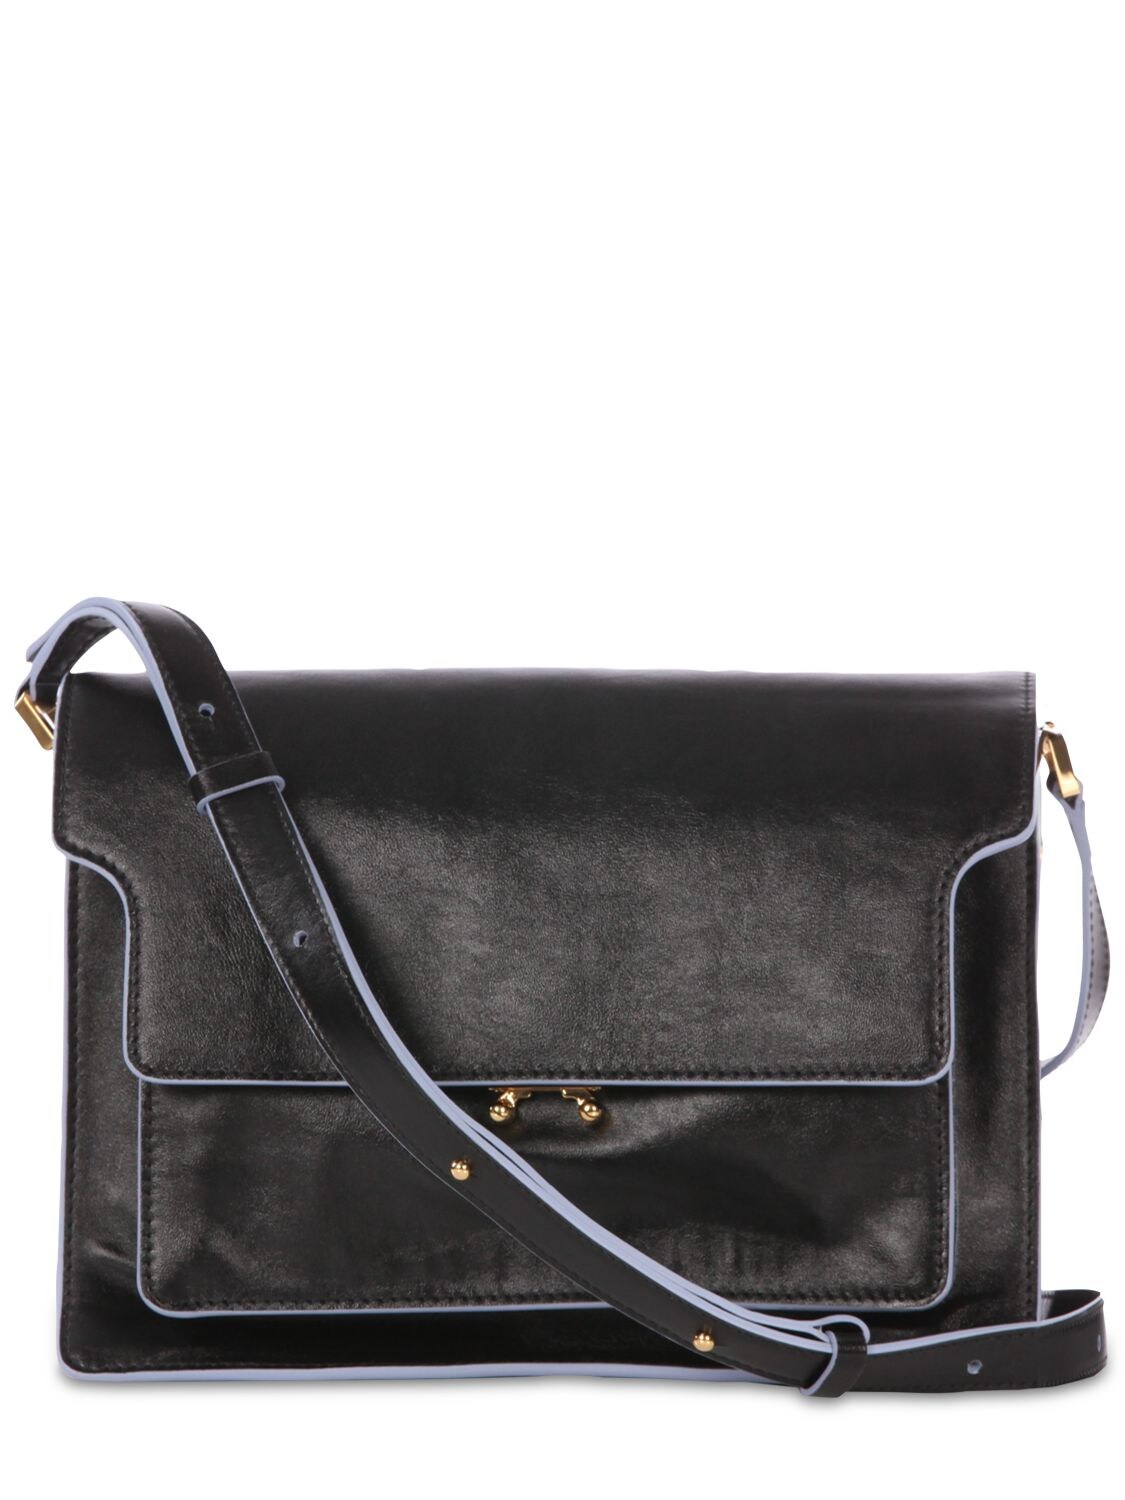 Marni Large Trunk Soft Leather Shoulder Bag In Black,dune